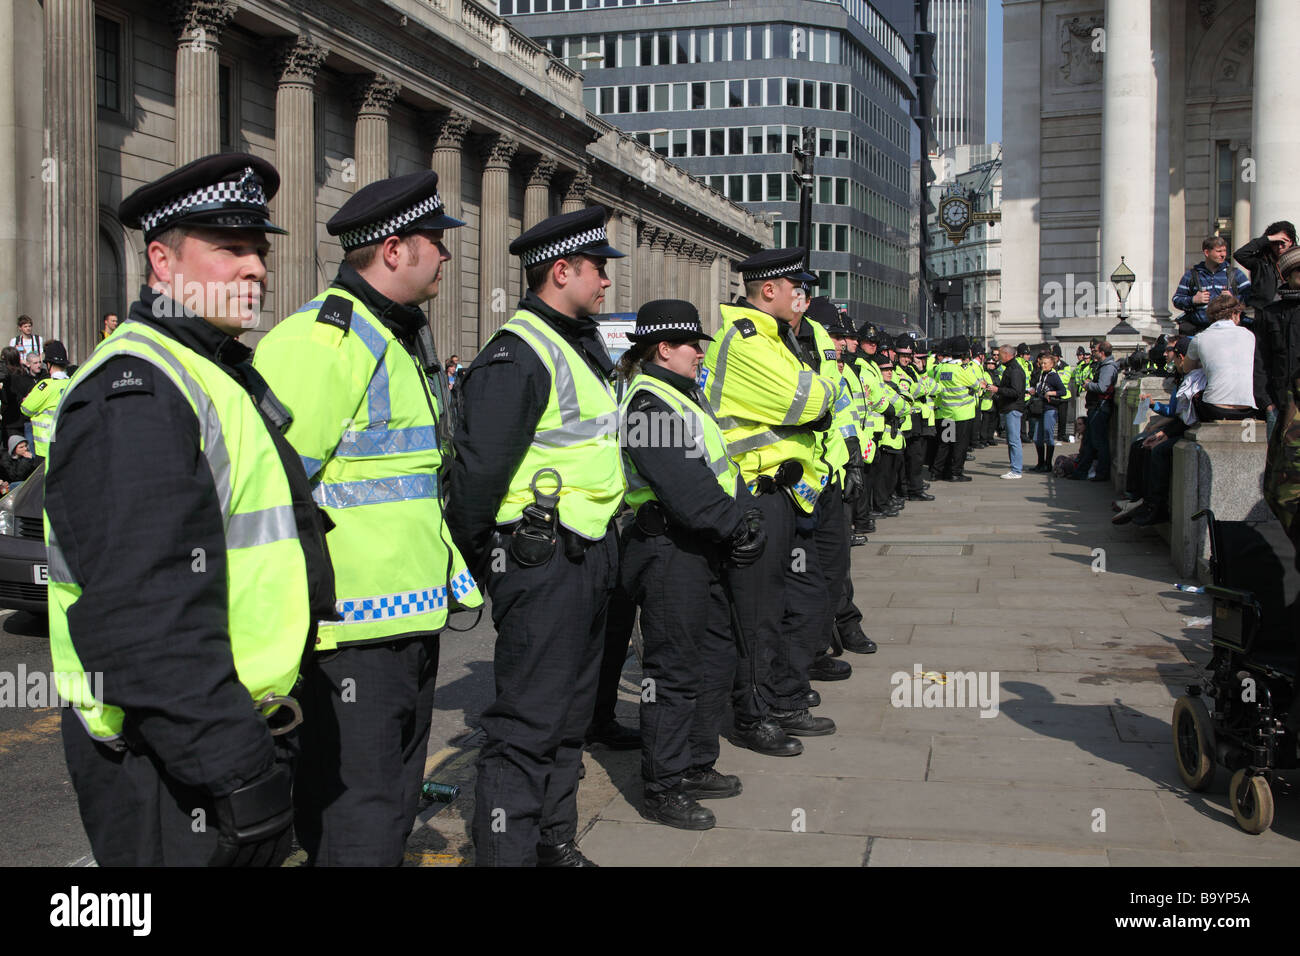 Les manifestants font face à l'extérieur de cordon de police la banque d'Angleterre au cours de la 2009 Sommet du G20, Londres, Royaume-Uni. Banque D'Images